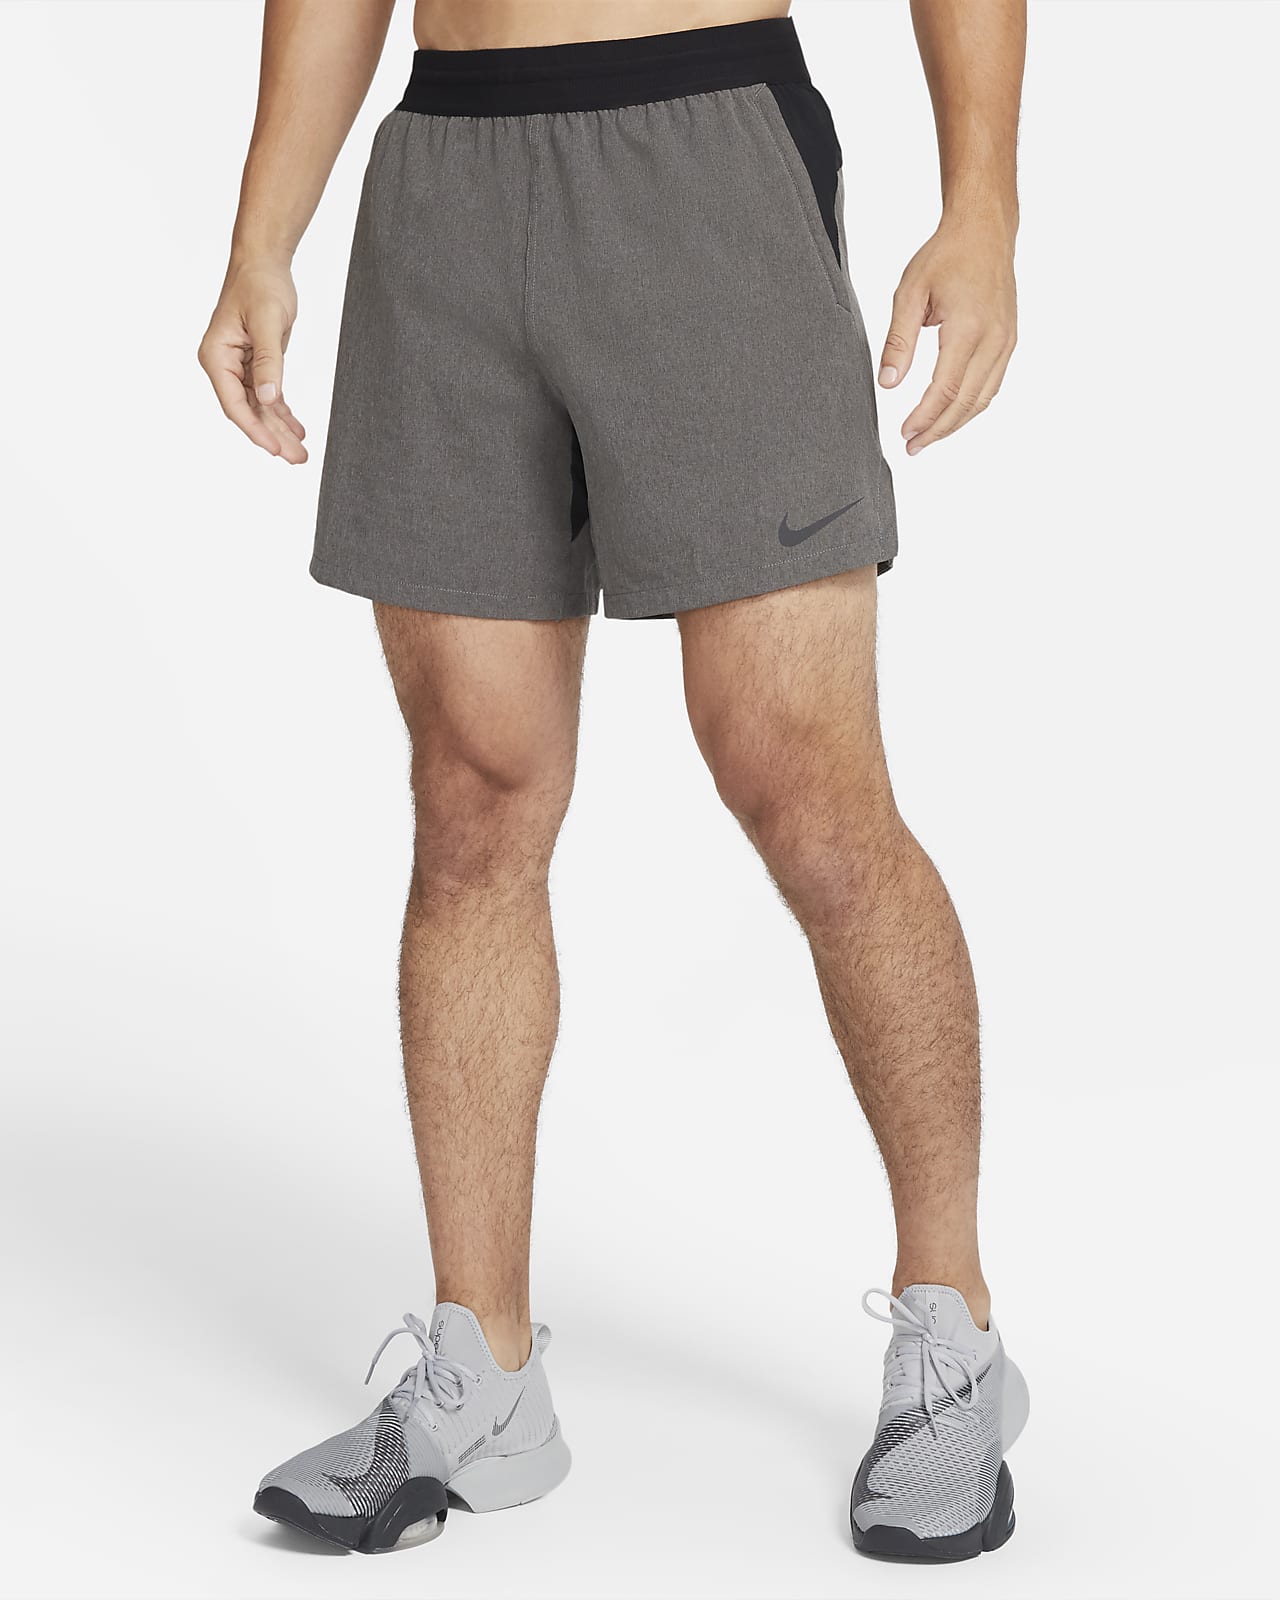 nike pro shorts design